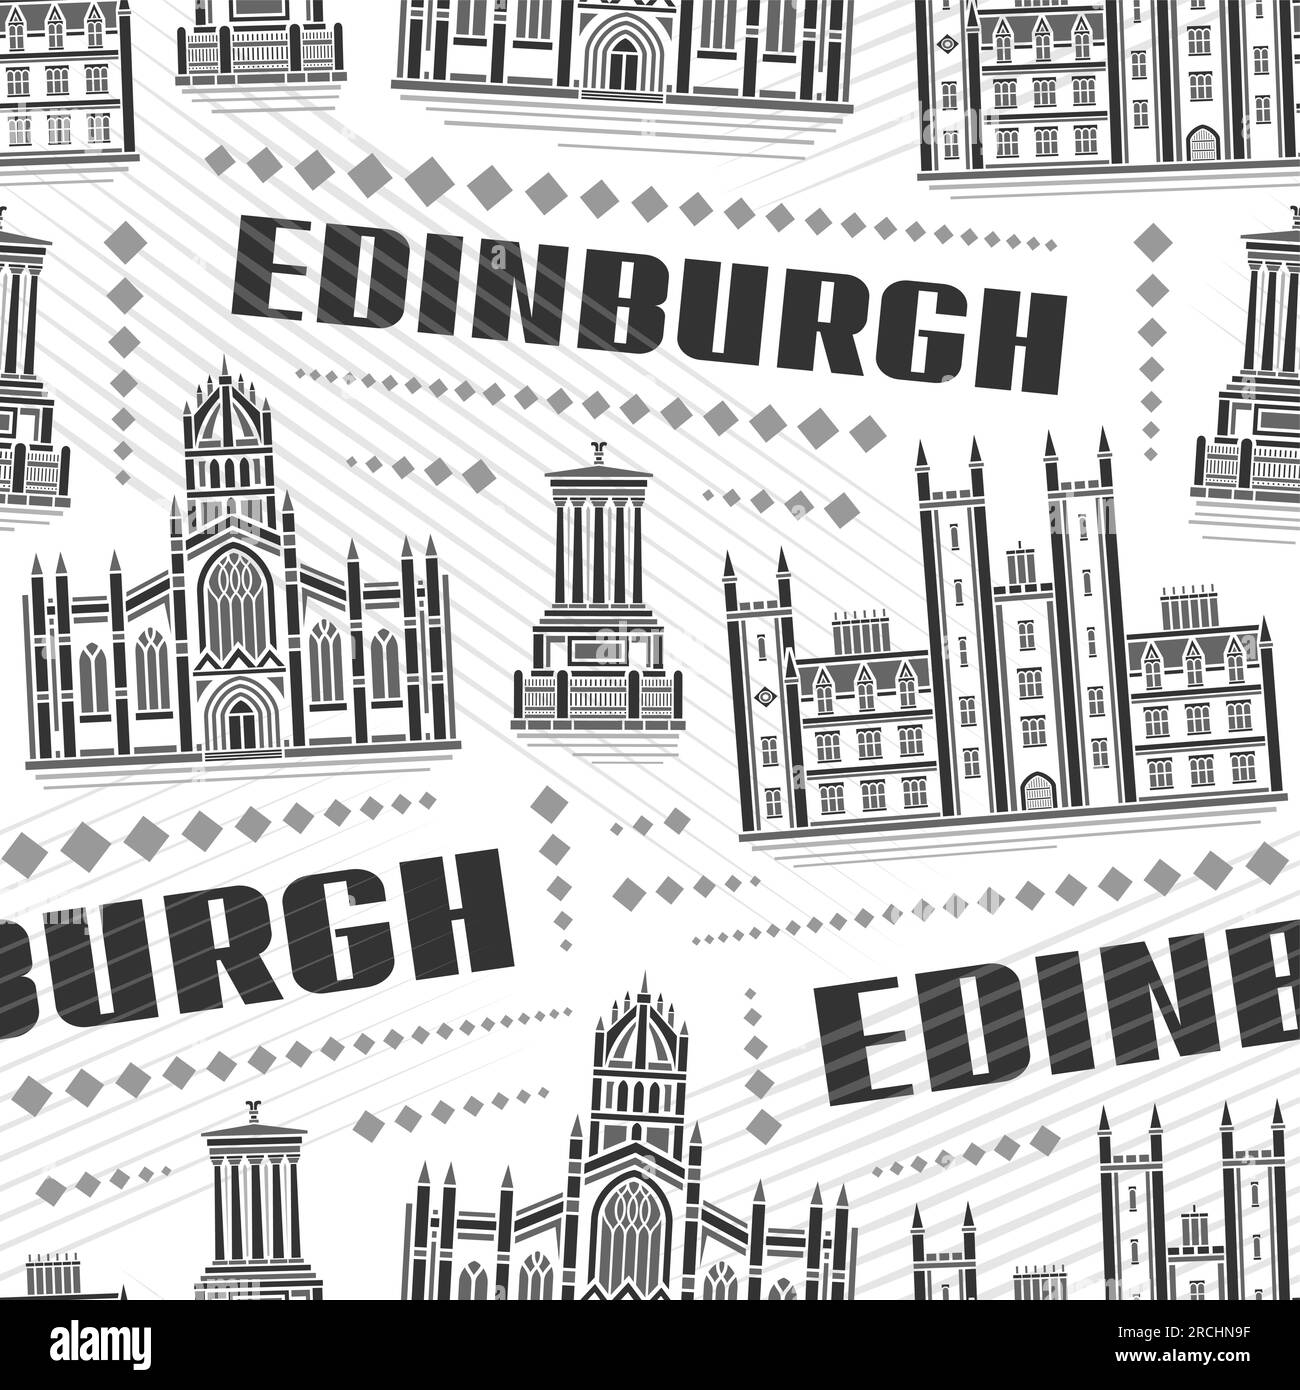 Vector Edinburgh Seamless Pattern, répétition de fond avec illustration du paysage de la ville historique européenne d'édimbourg sur fond blanc, monochrome Illustration de Vecteur